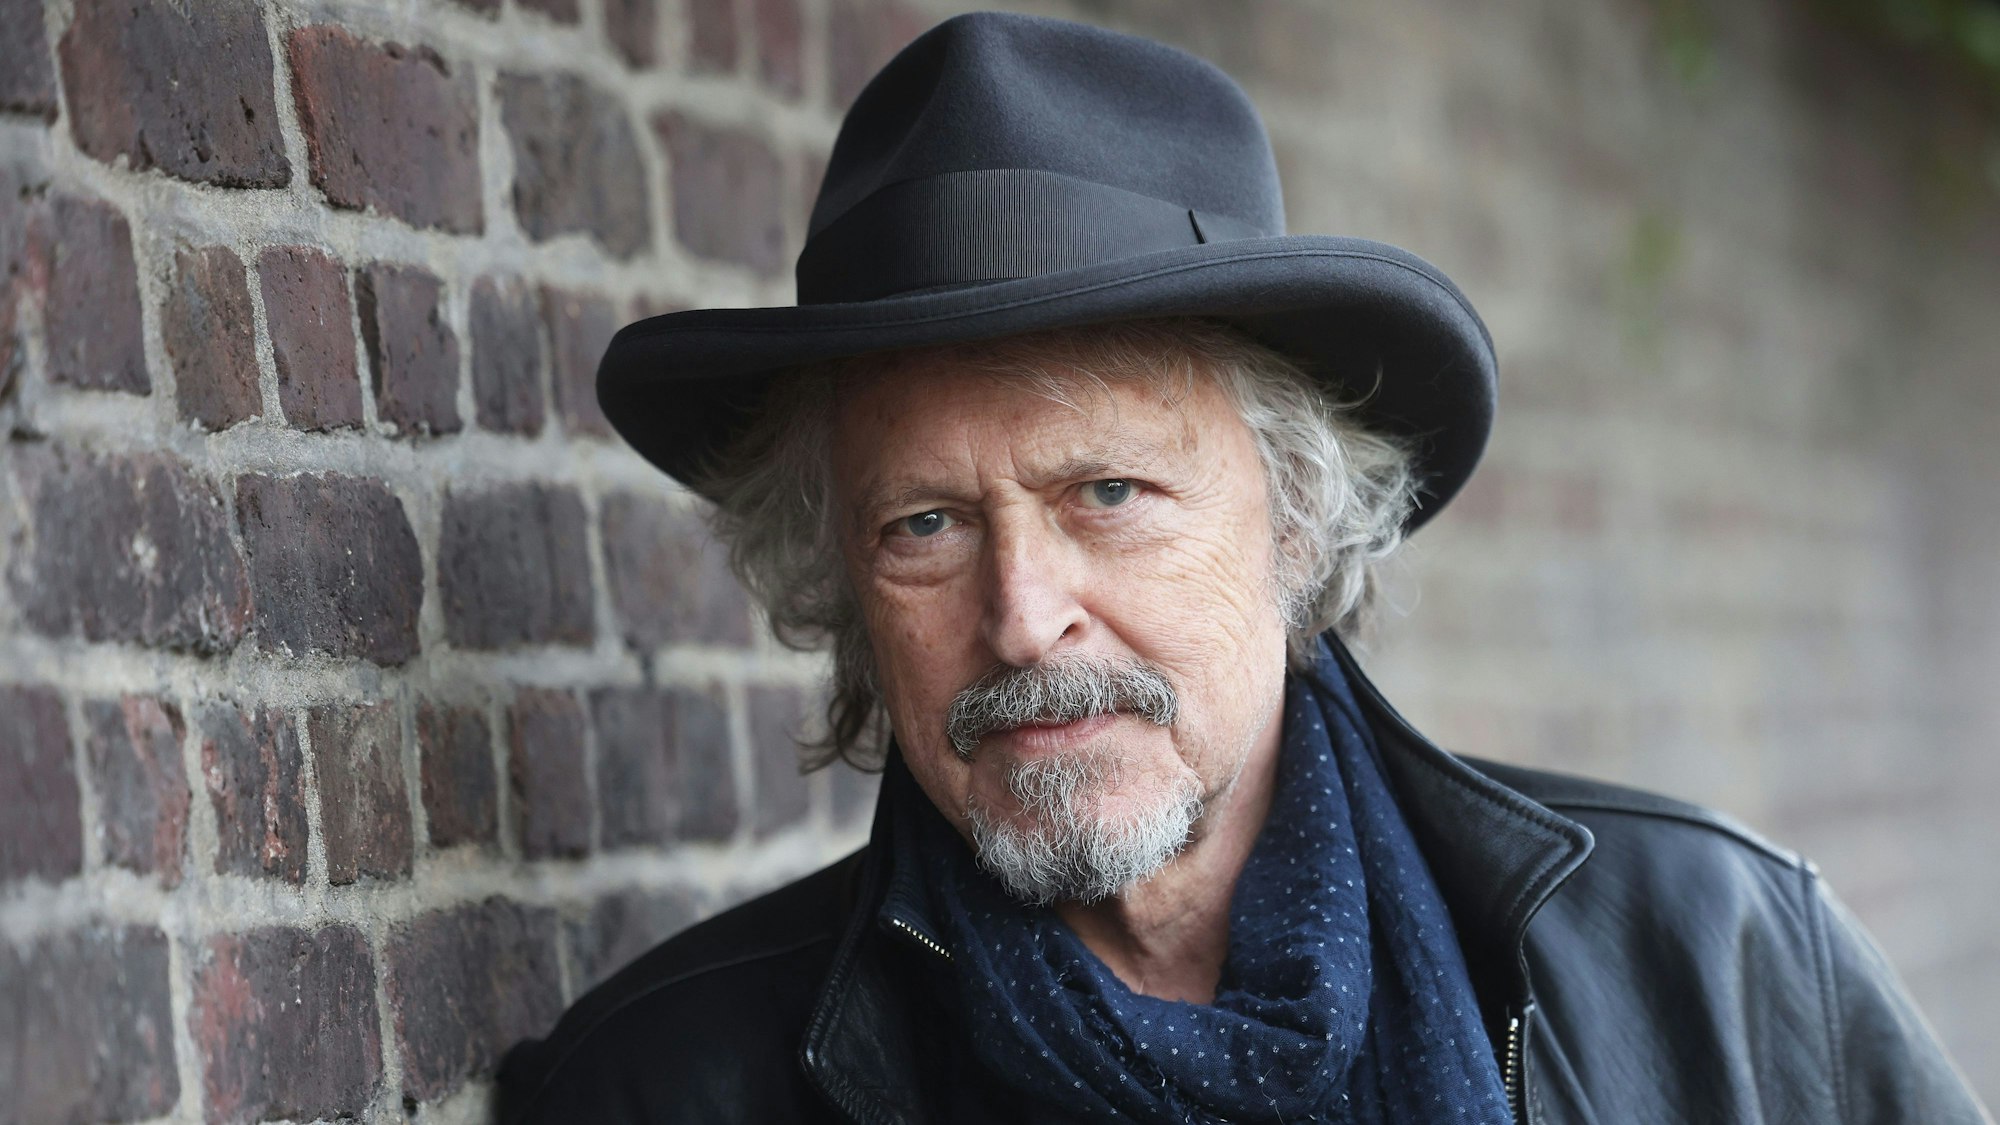 Wolfgang Niedecken, Musiker und Sänger, steht am Straßenrand. Niedecken veröffentlicht ein Soloalbum zu Bob Dylan.